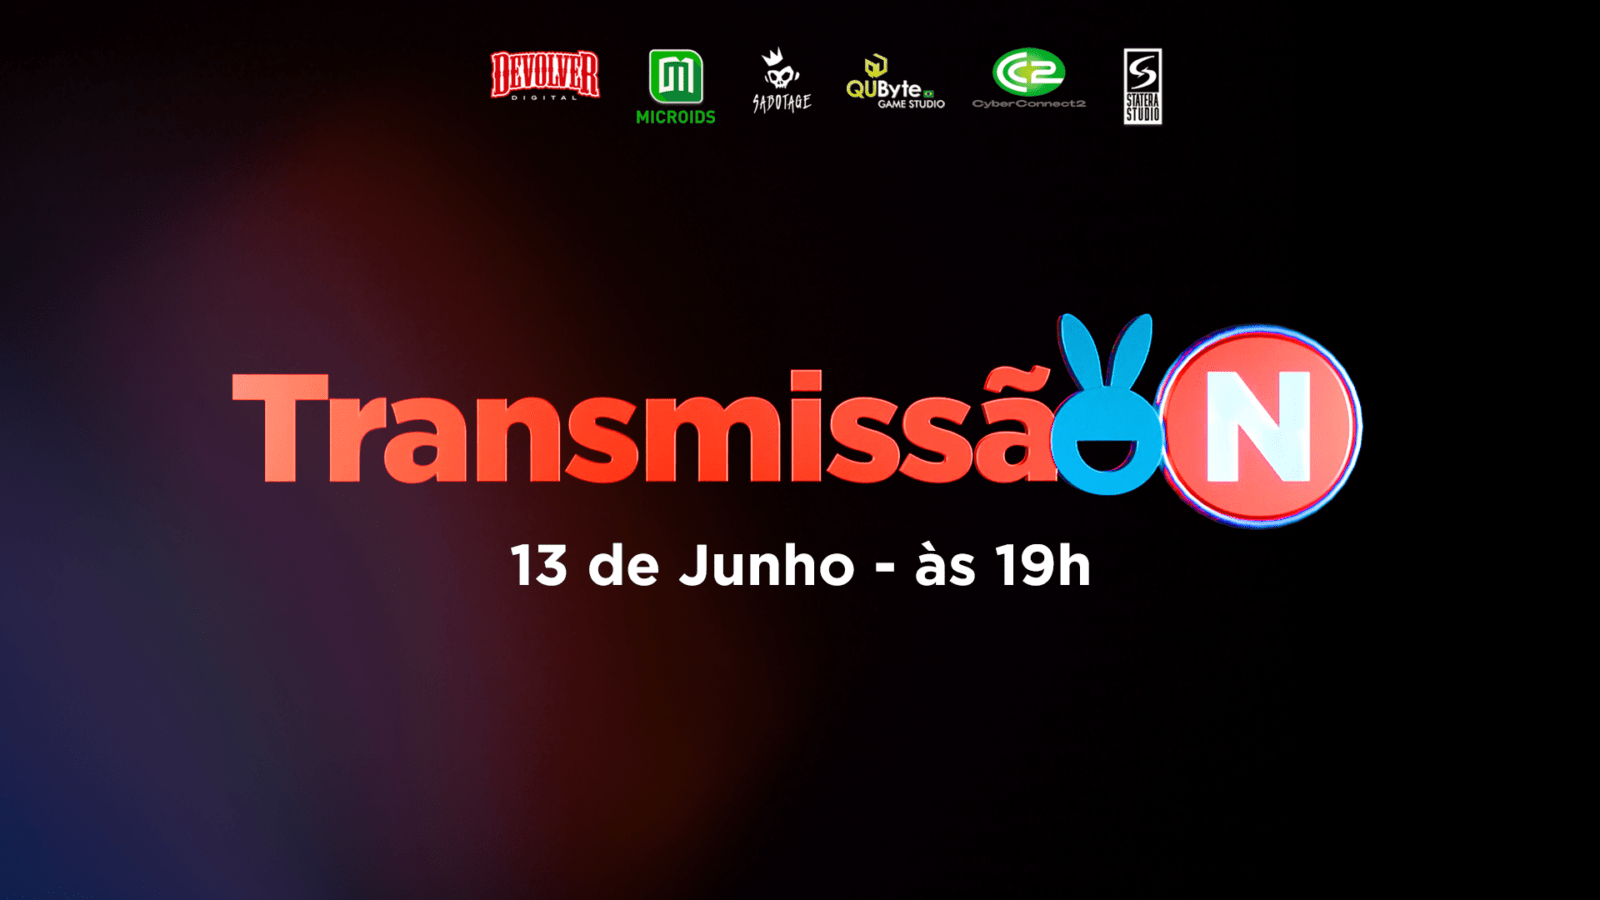 Transmissão-N: evento online especial para o público brasileiro acontece dia 13